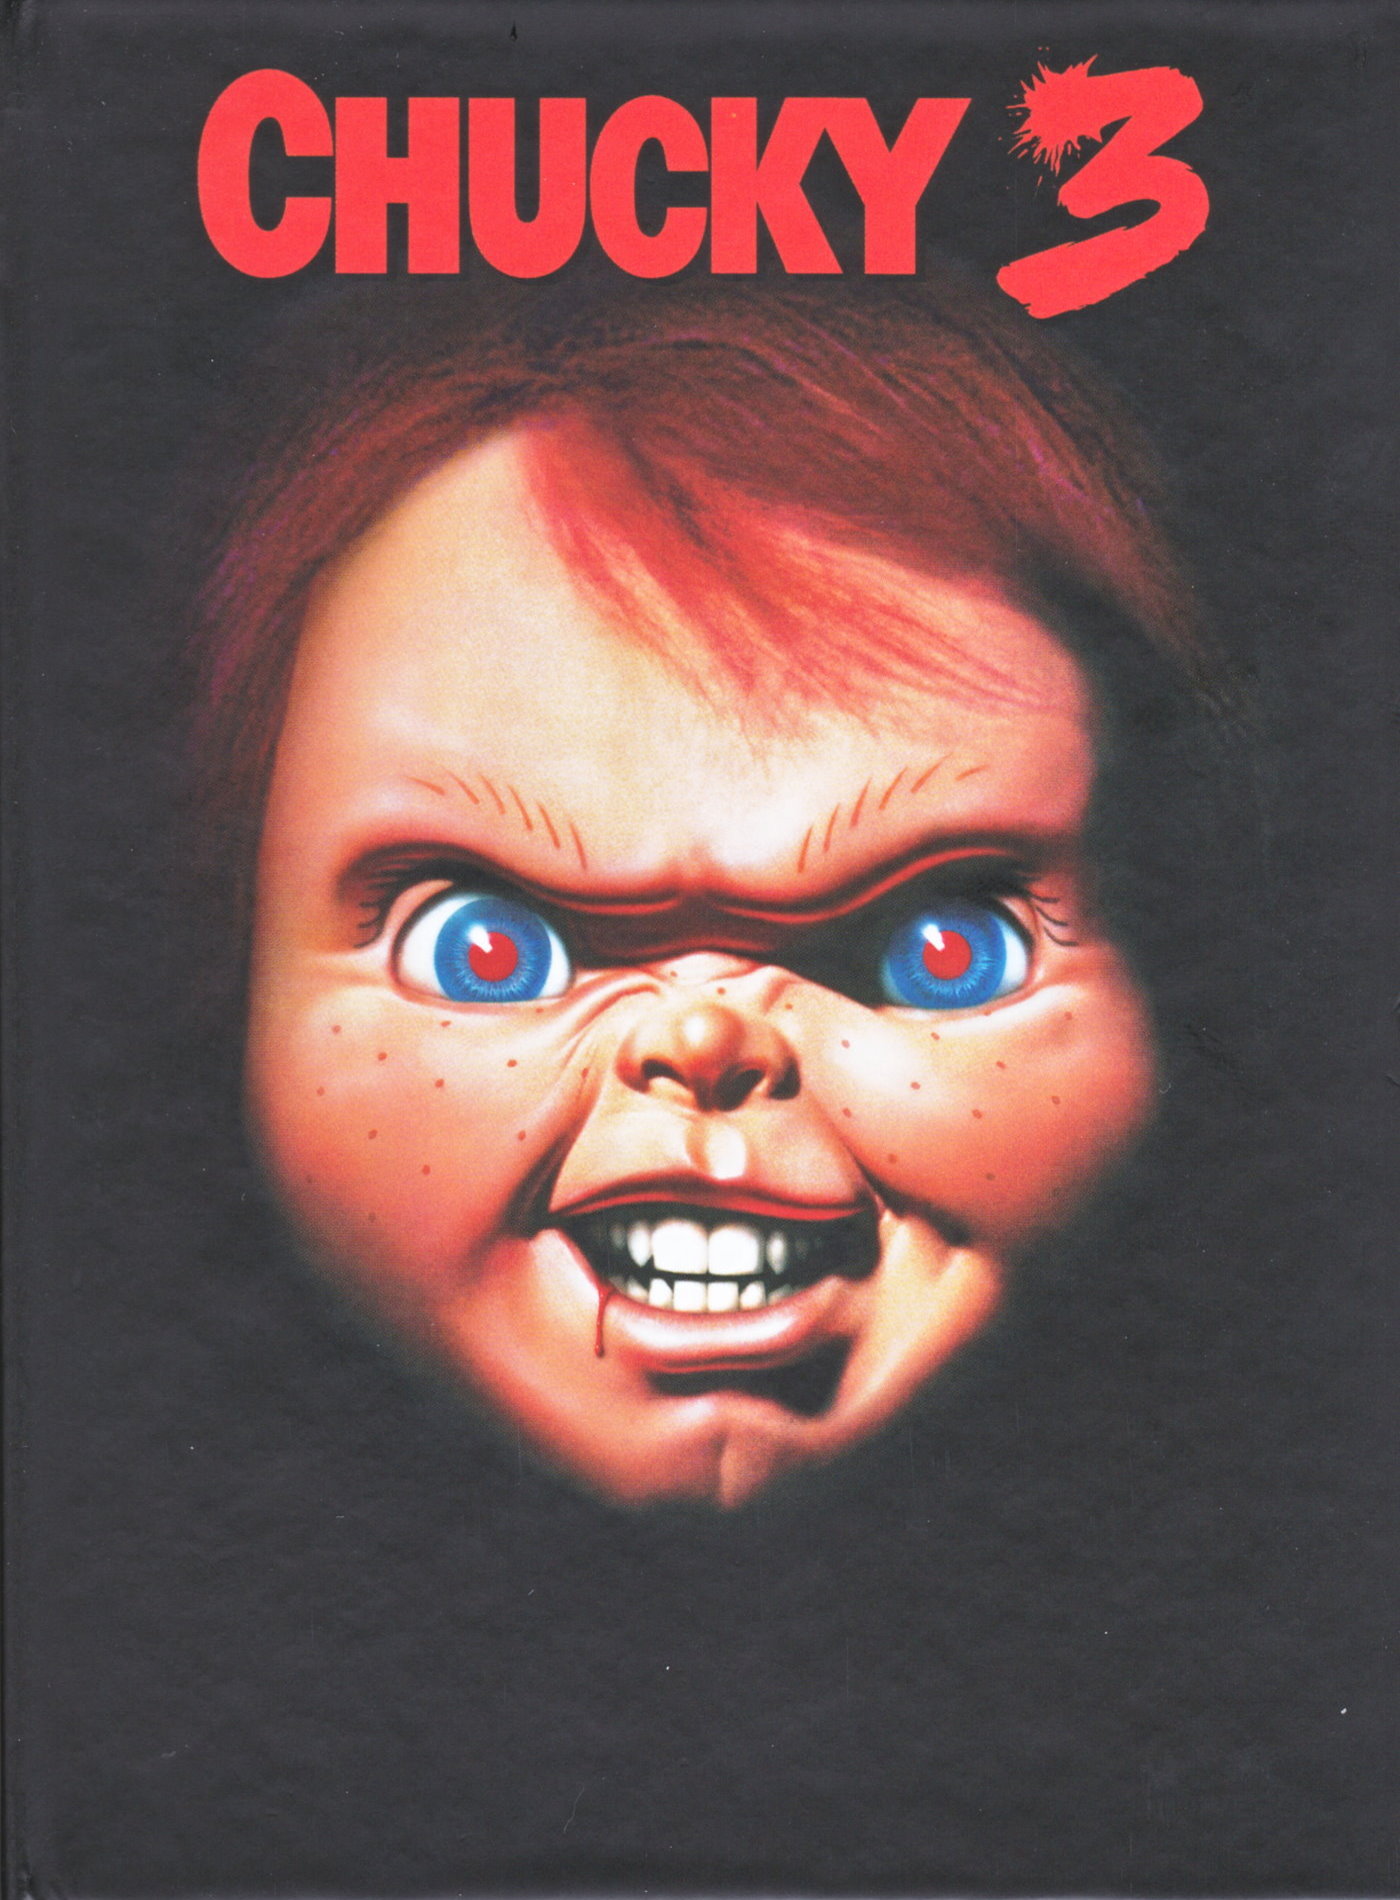 Cover - Chucky 3.jpg